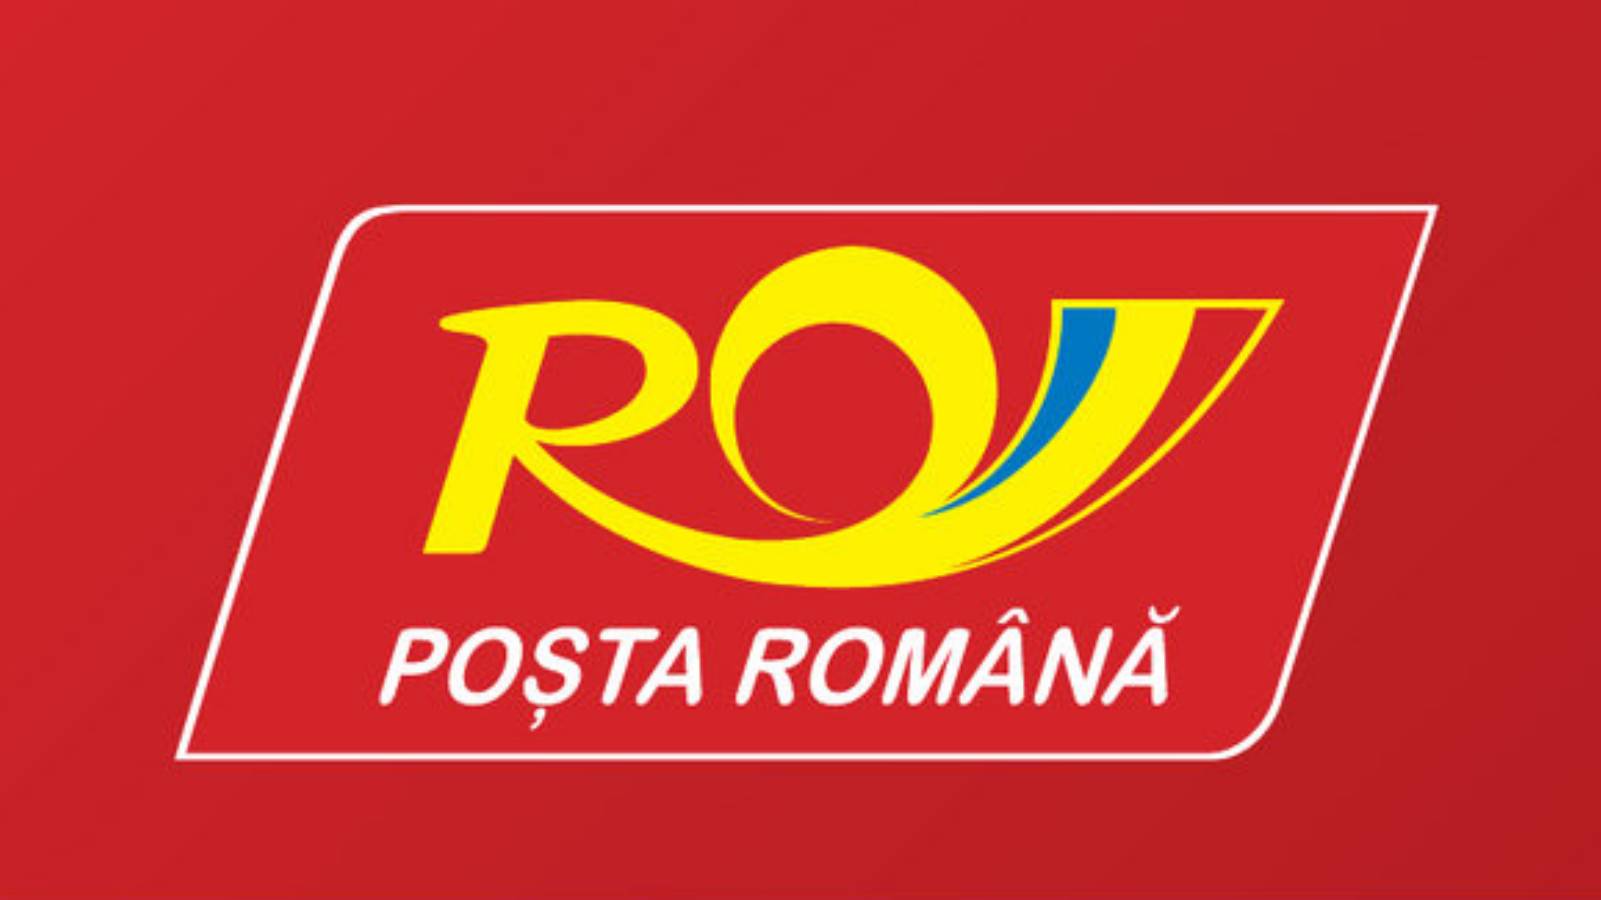 Roemeense post-e-mailverzendingen